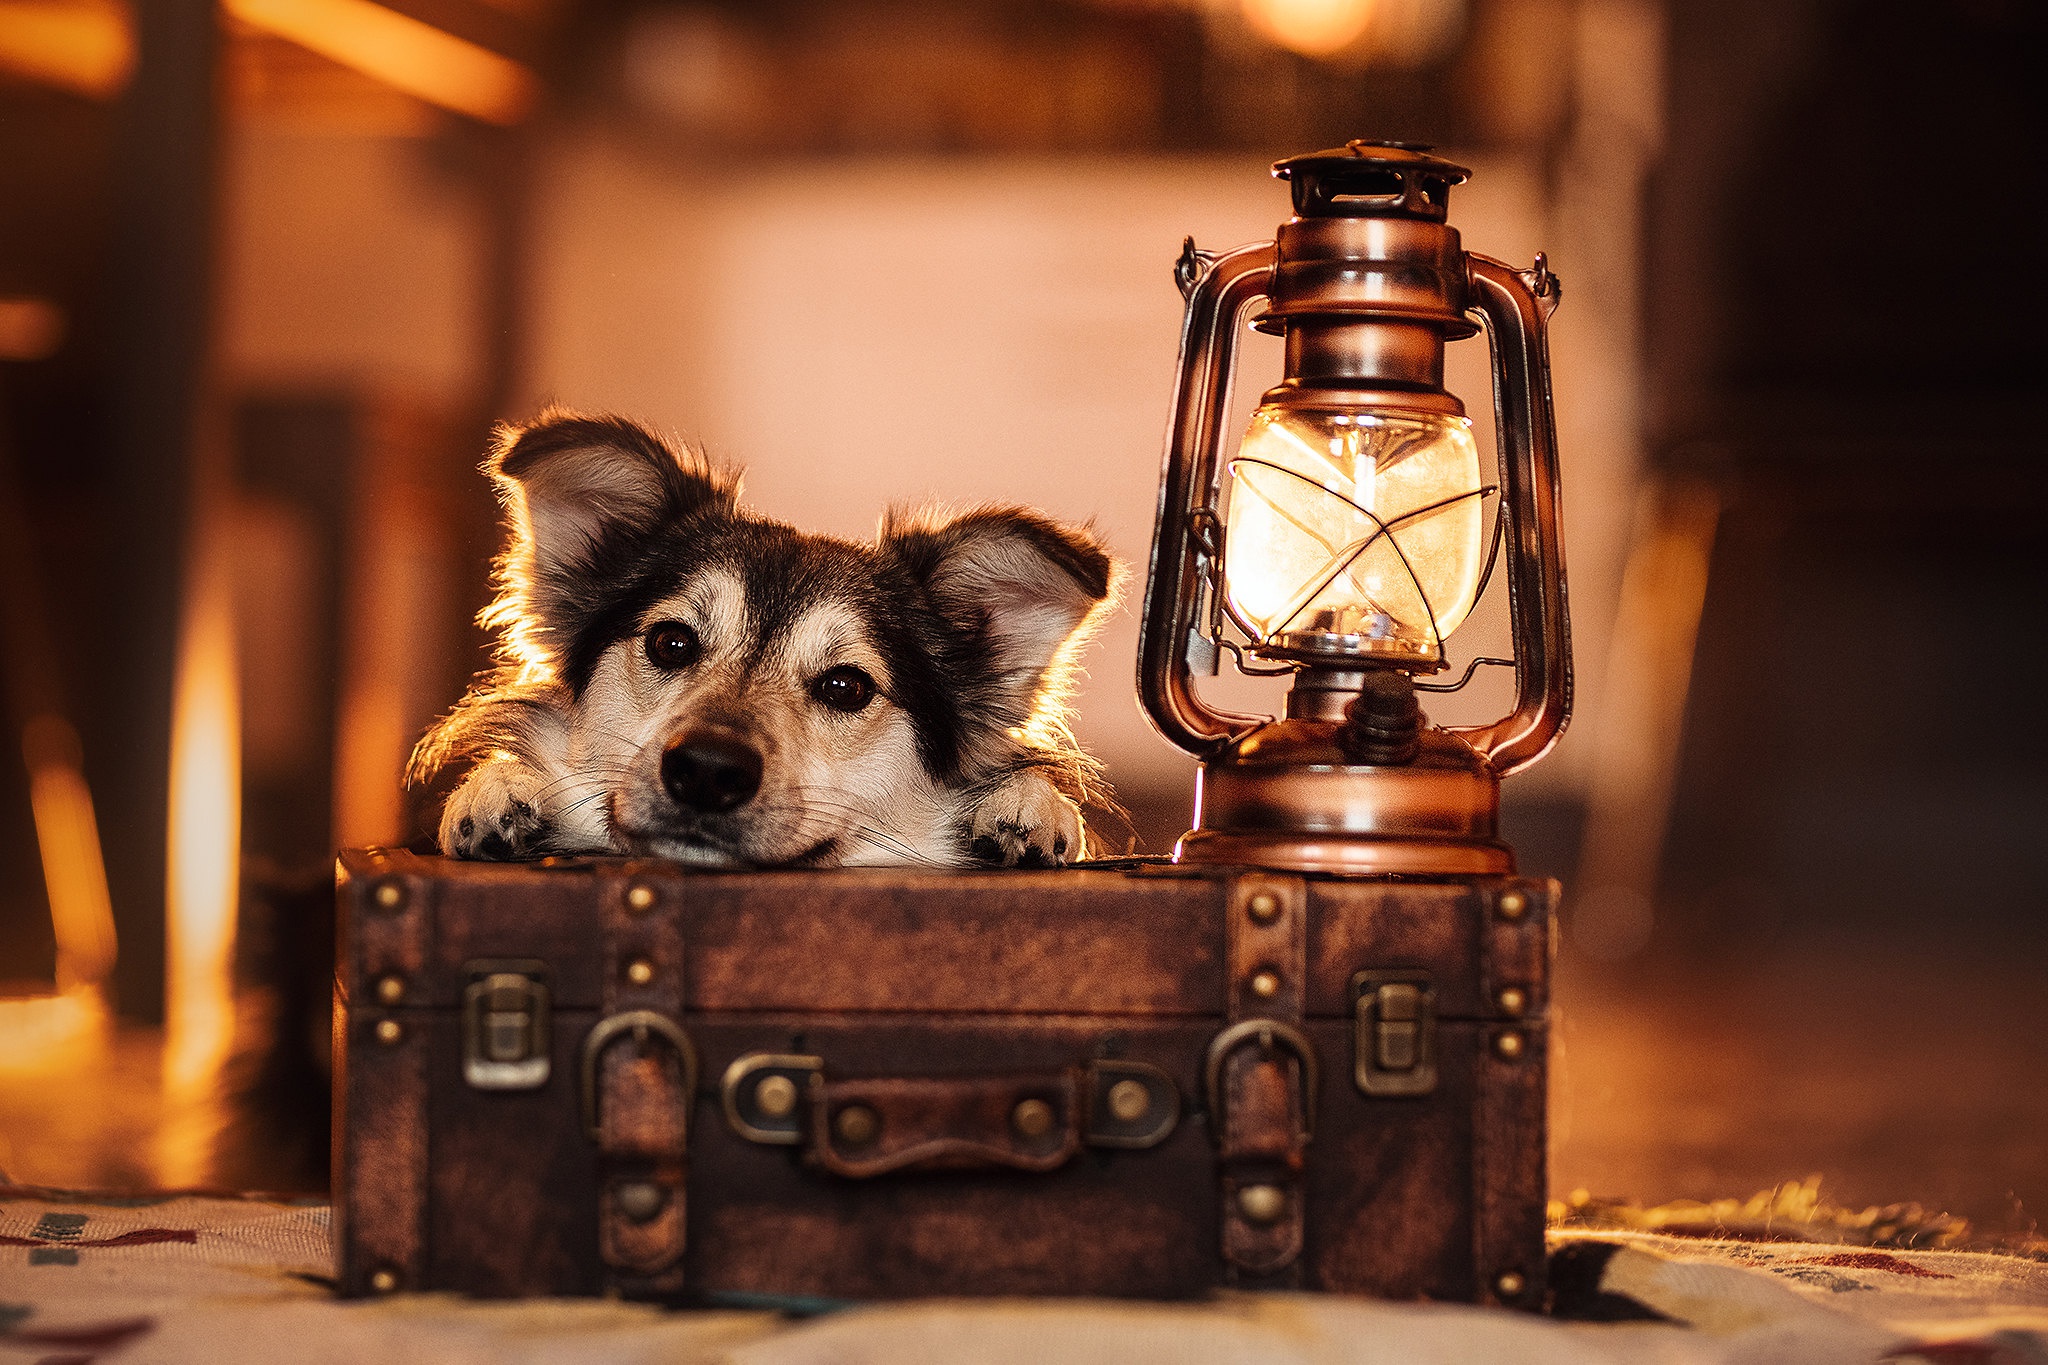 Free download wallpaper Dogs, Dog, Lantern, Animal, Suitcase on your PC desktop